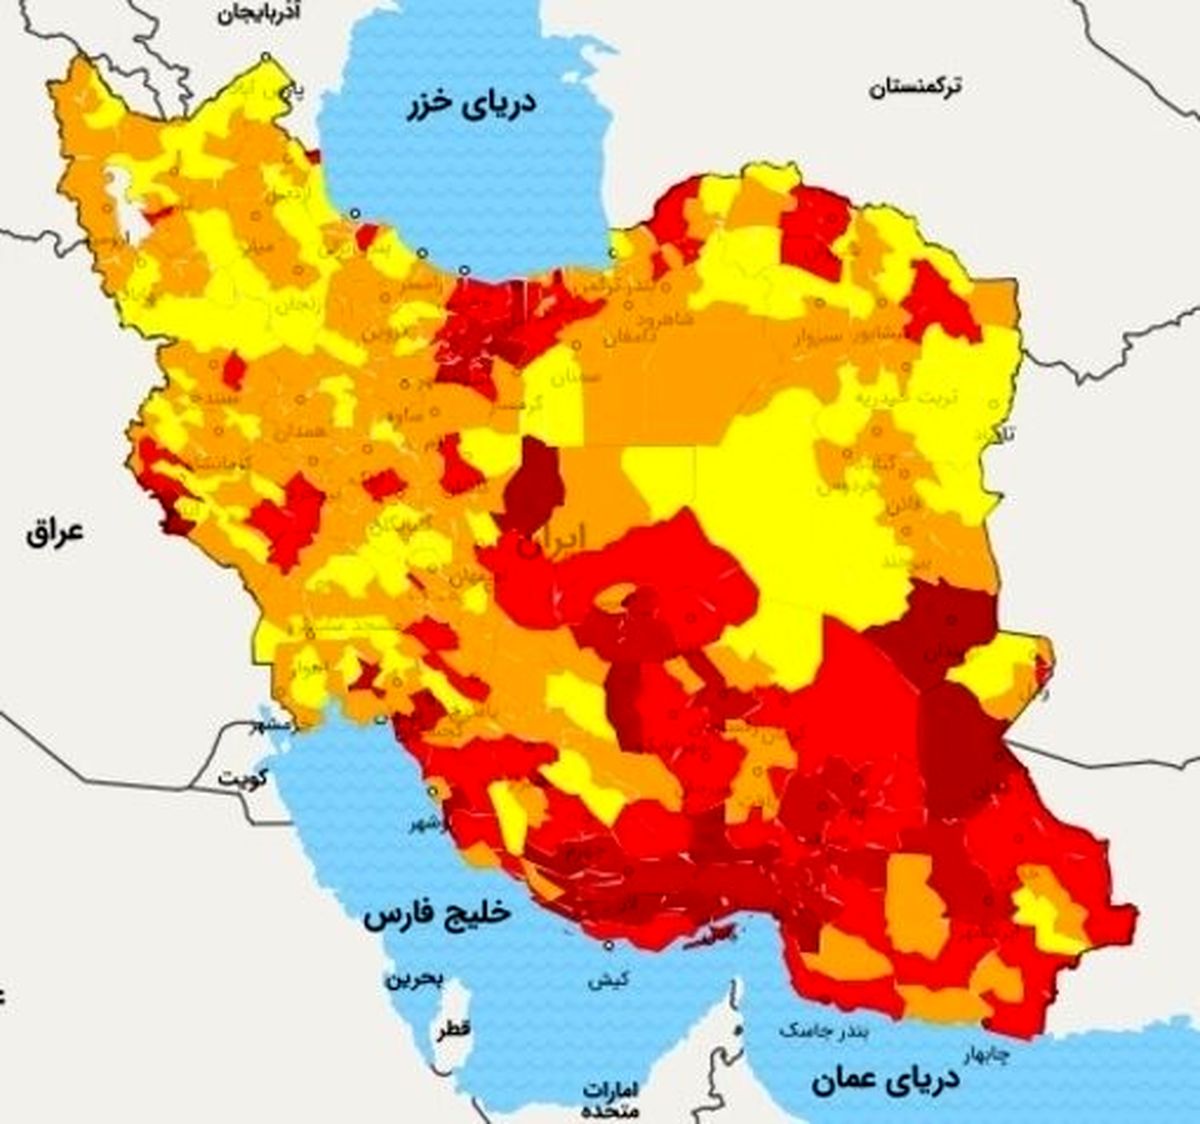 دلتا تا جنبیدیم به تهران رسید/ شتاب در واکسیناسیون راهکار مقابله با دلتاست